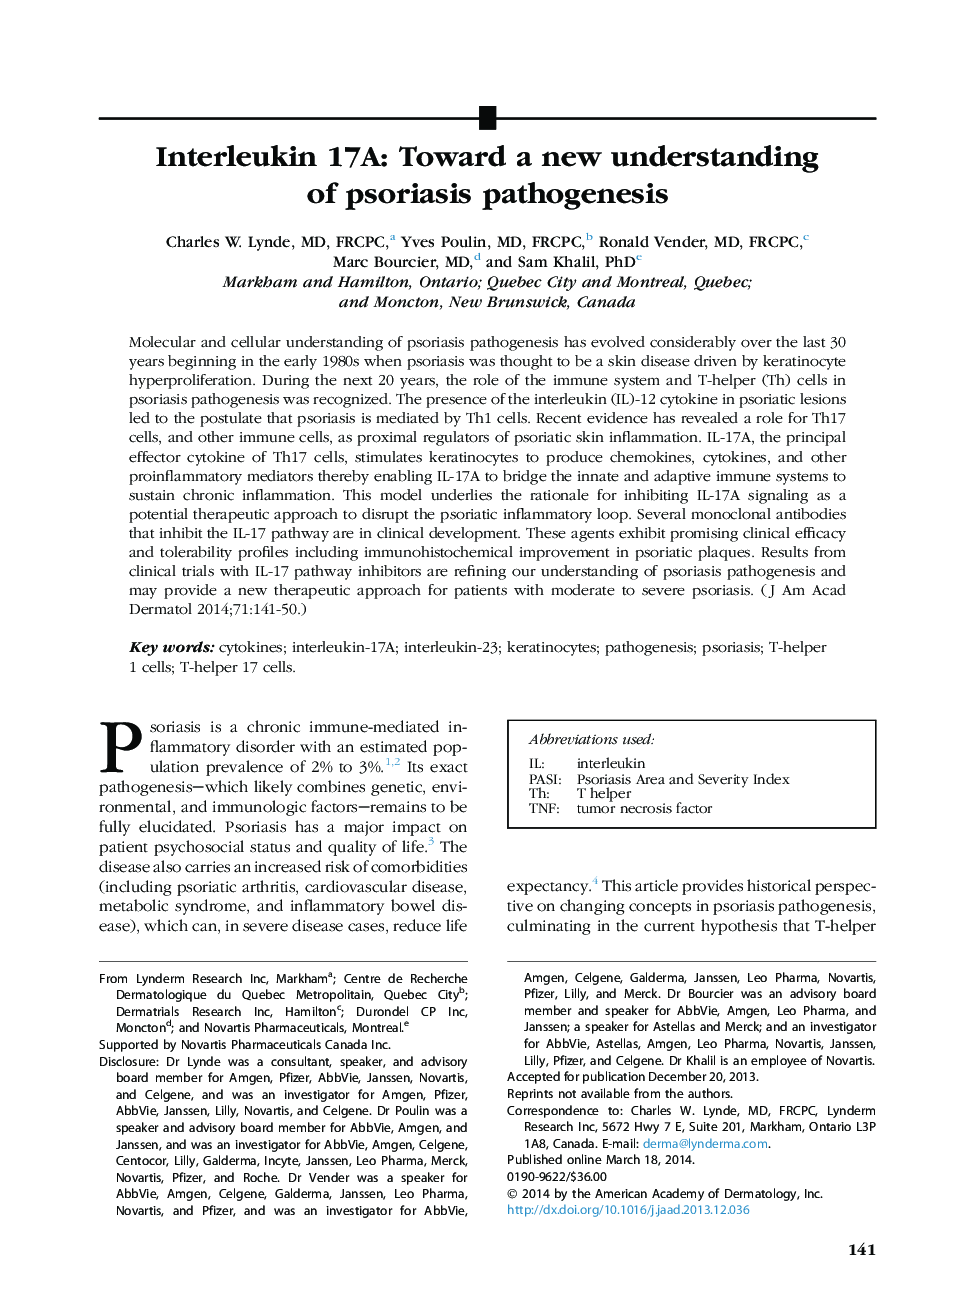 ReviewInterleukin 17A: Toward a new understanding of psoriasis pathogenesis